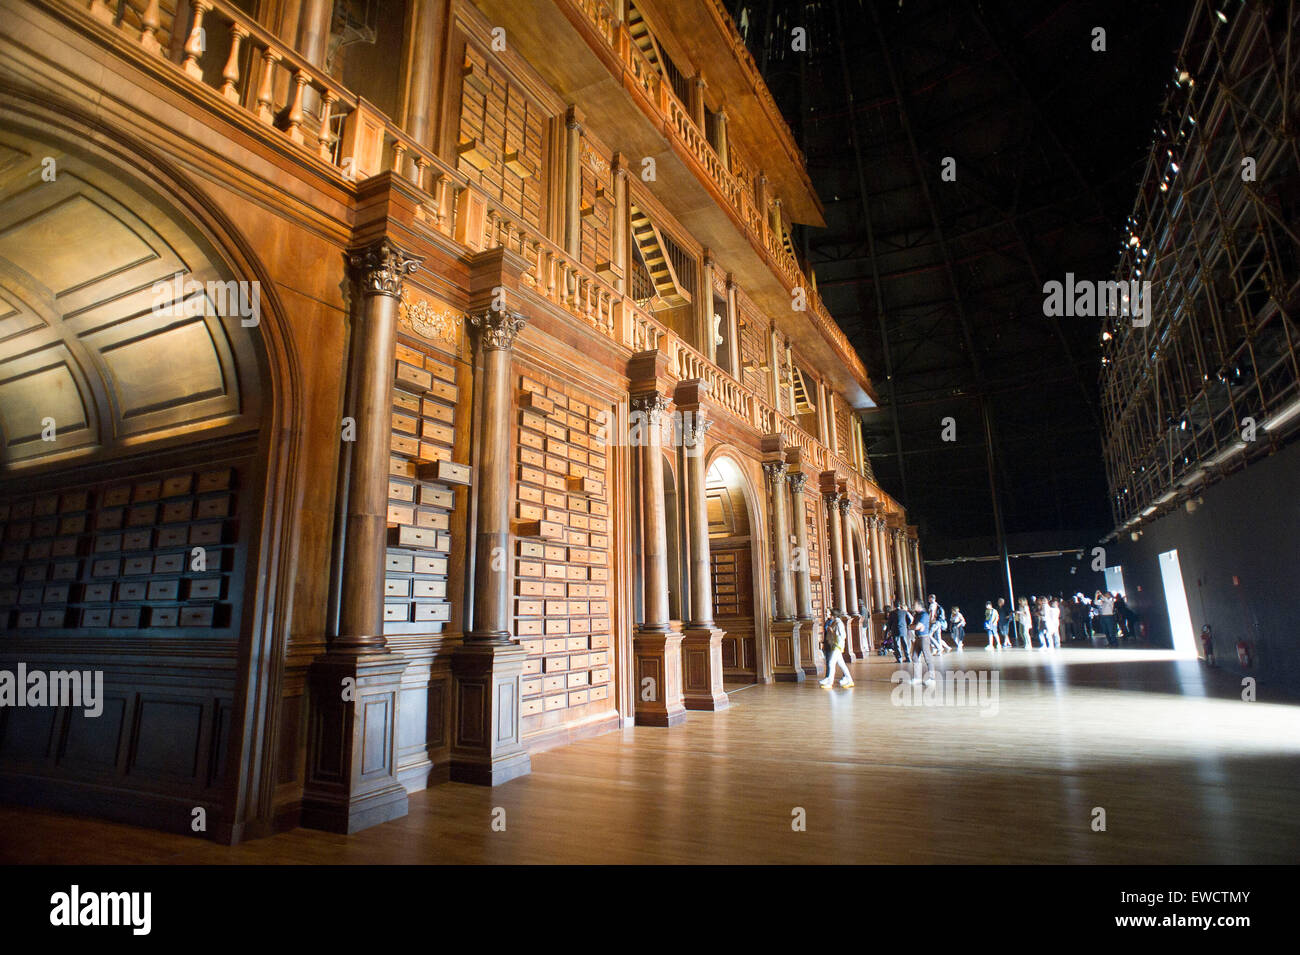 Italia - Milano - Expo 2015 - Padiglione Zero - Teatro della memoria Foto  stock - Alamy